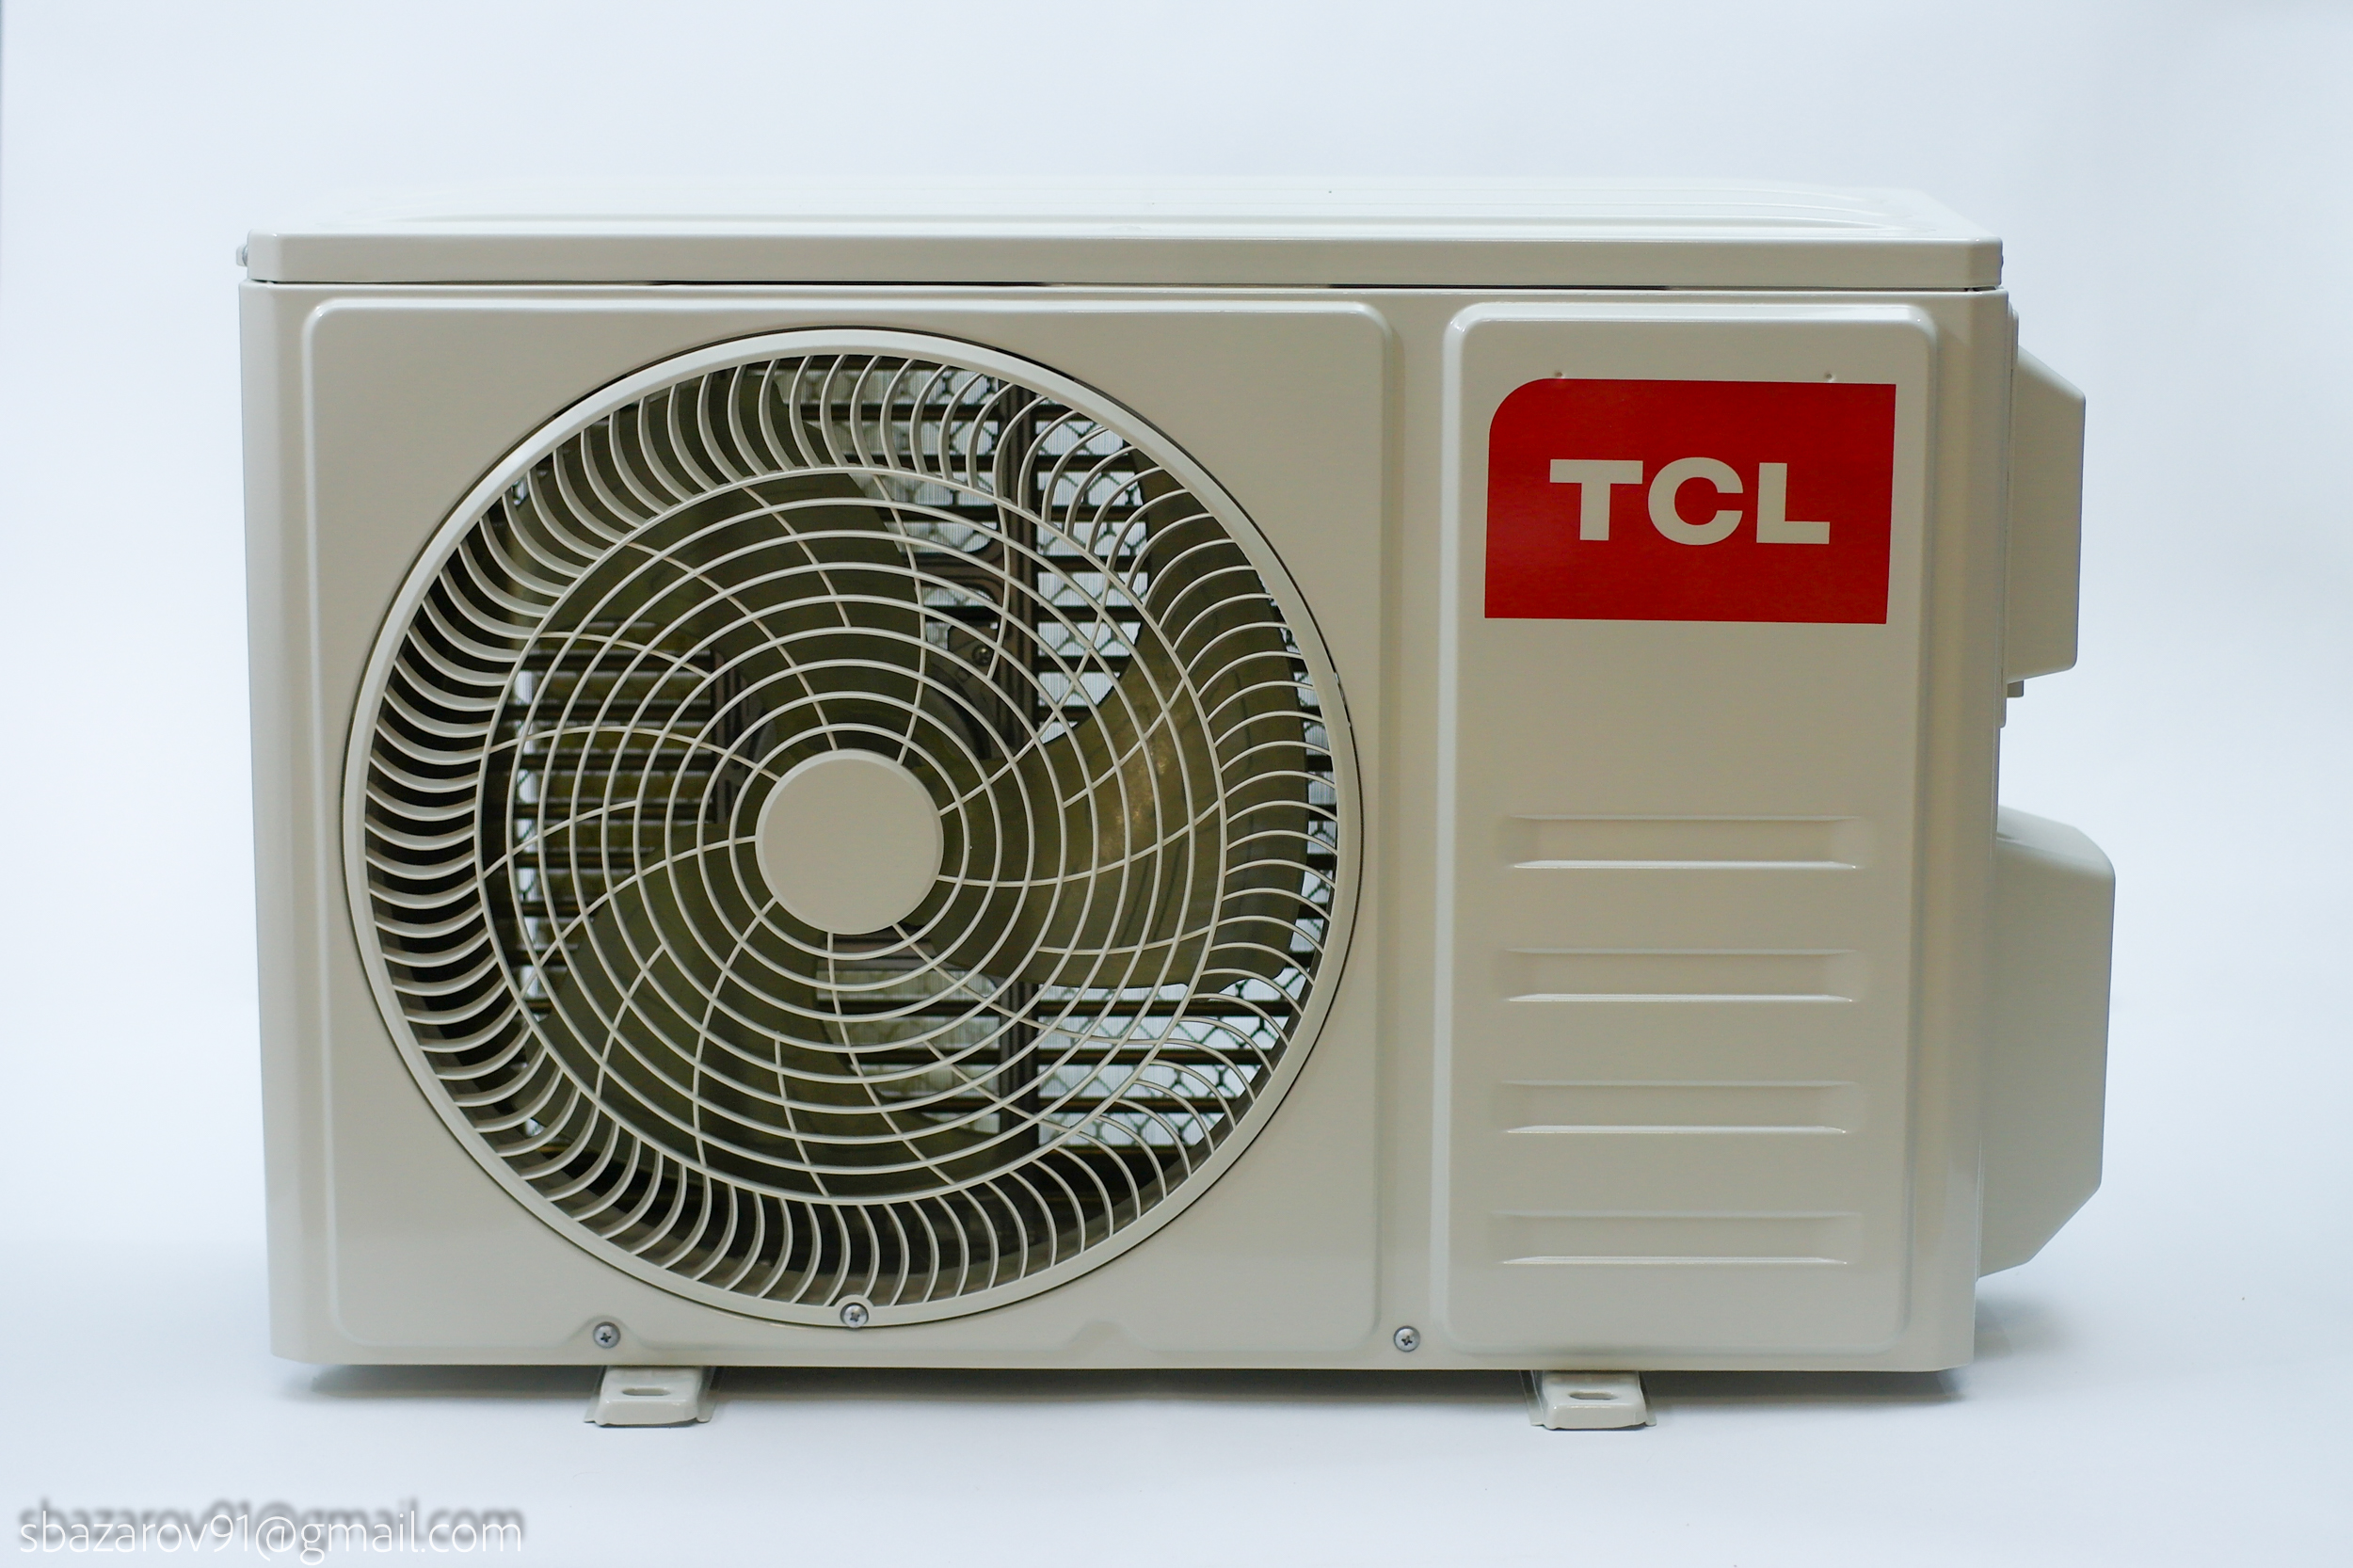 Tcl tac 09chsa dsei w. Сплит-система TCL tac-09chsa/DSEI-W. TCL tac-09chsa/BH. TCL tac-12chsa/TPG. TCL tac-12chsa/TPG-W.